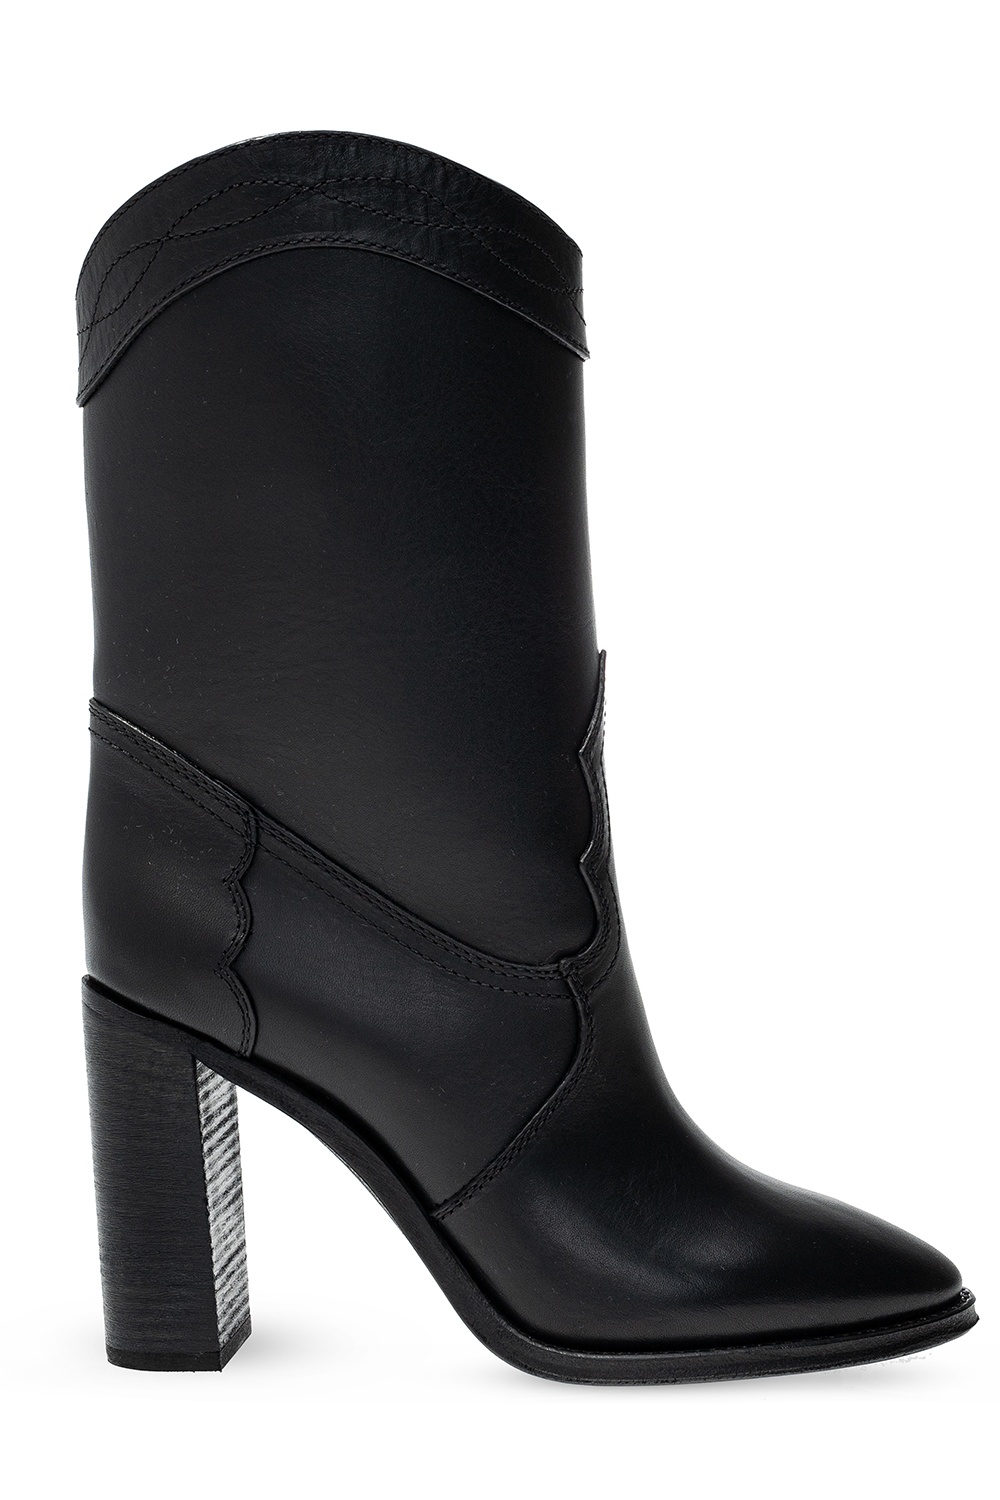 Saint Laurent ‘Kate’ heeled slip-on boots